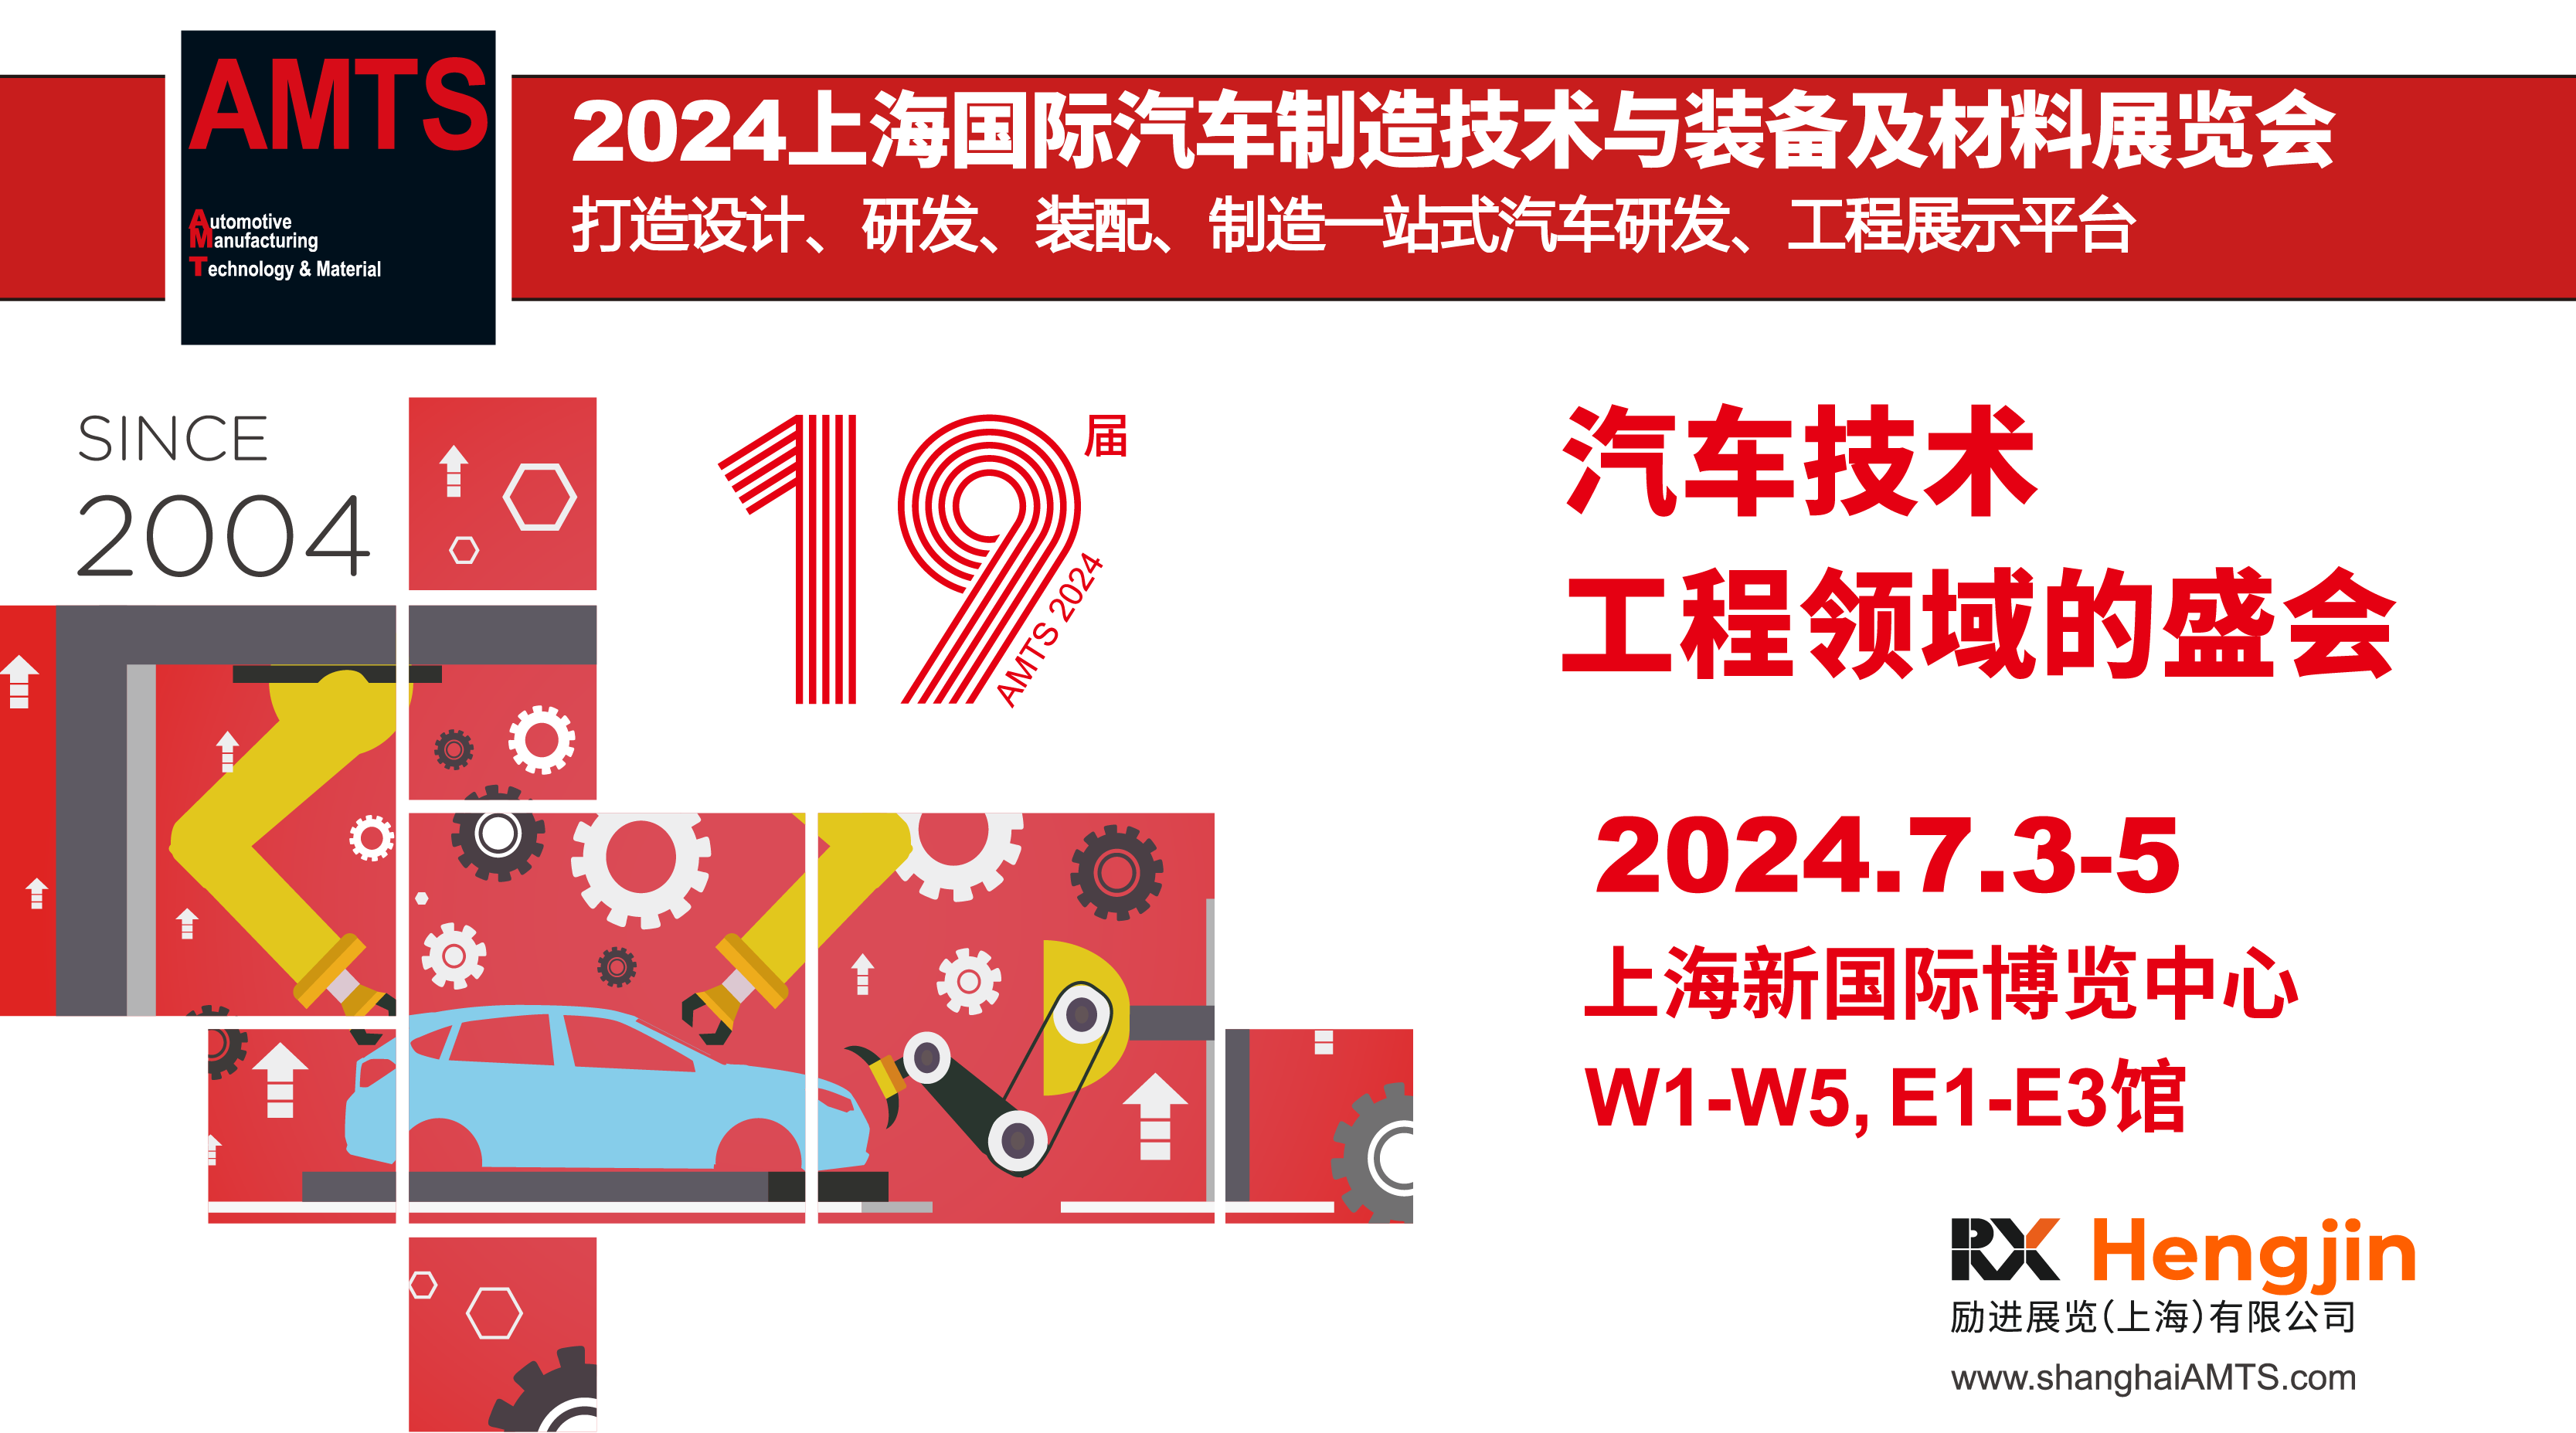 AMTS 2024上海国际汽车制造技术与装备及材料展览会